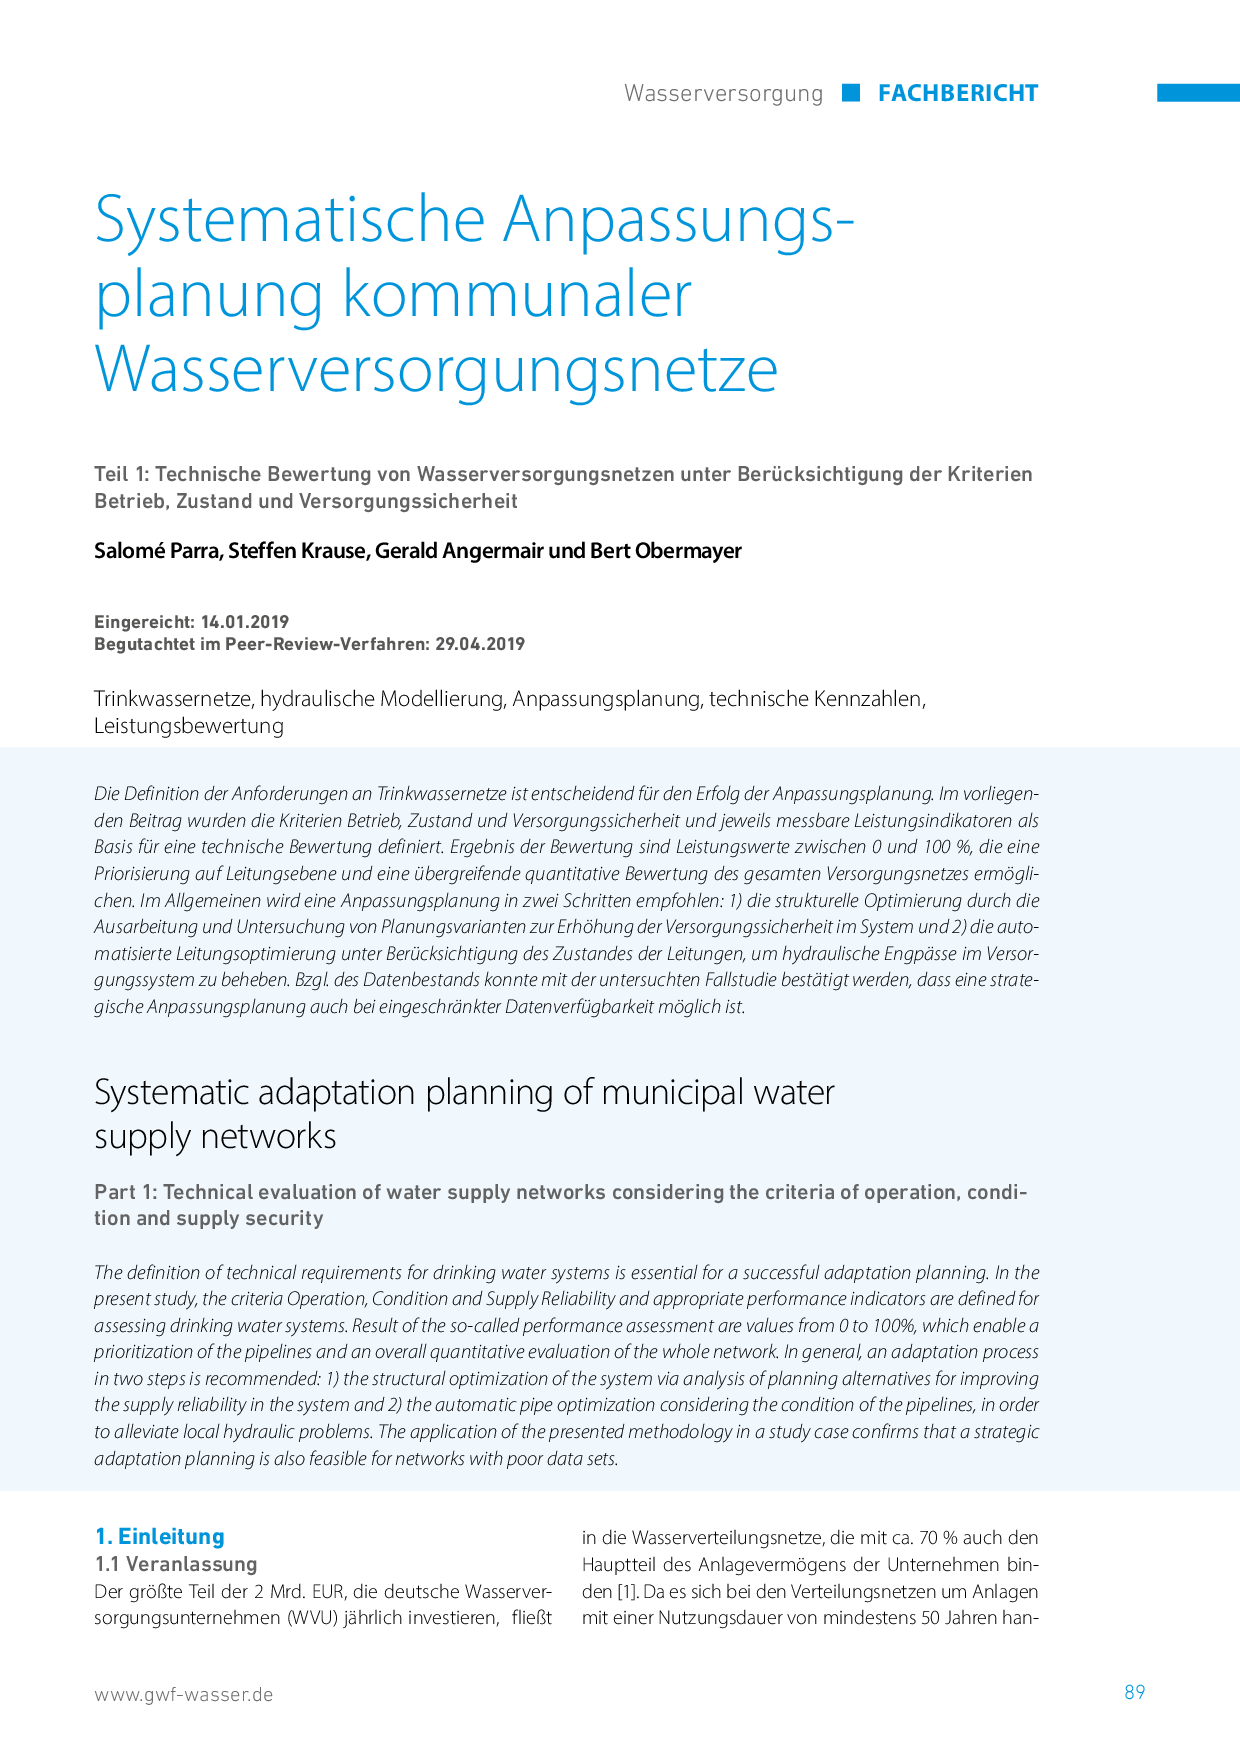 Systematische Anpassungsplanung kommunaler Wasserversorgungsnetze